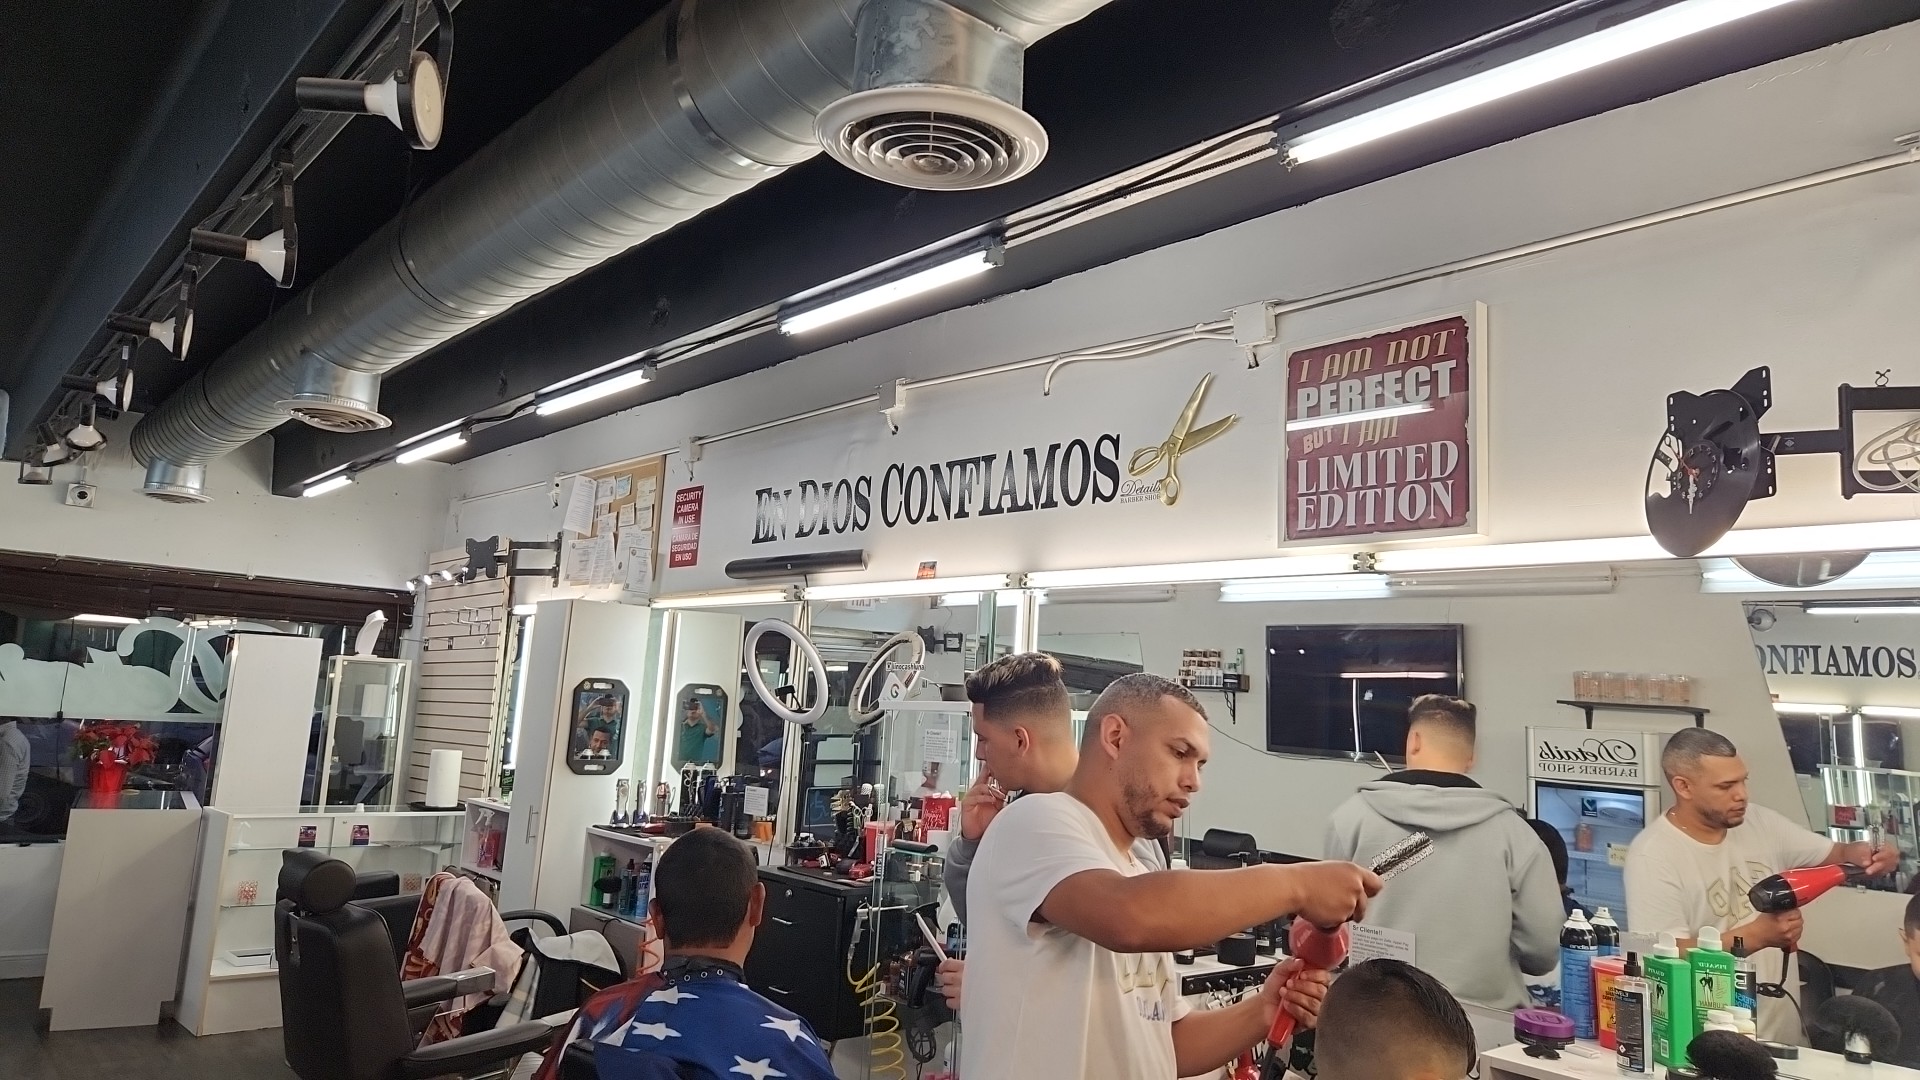 Details Barber Shop